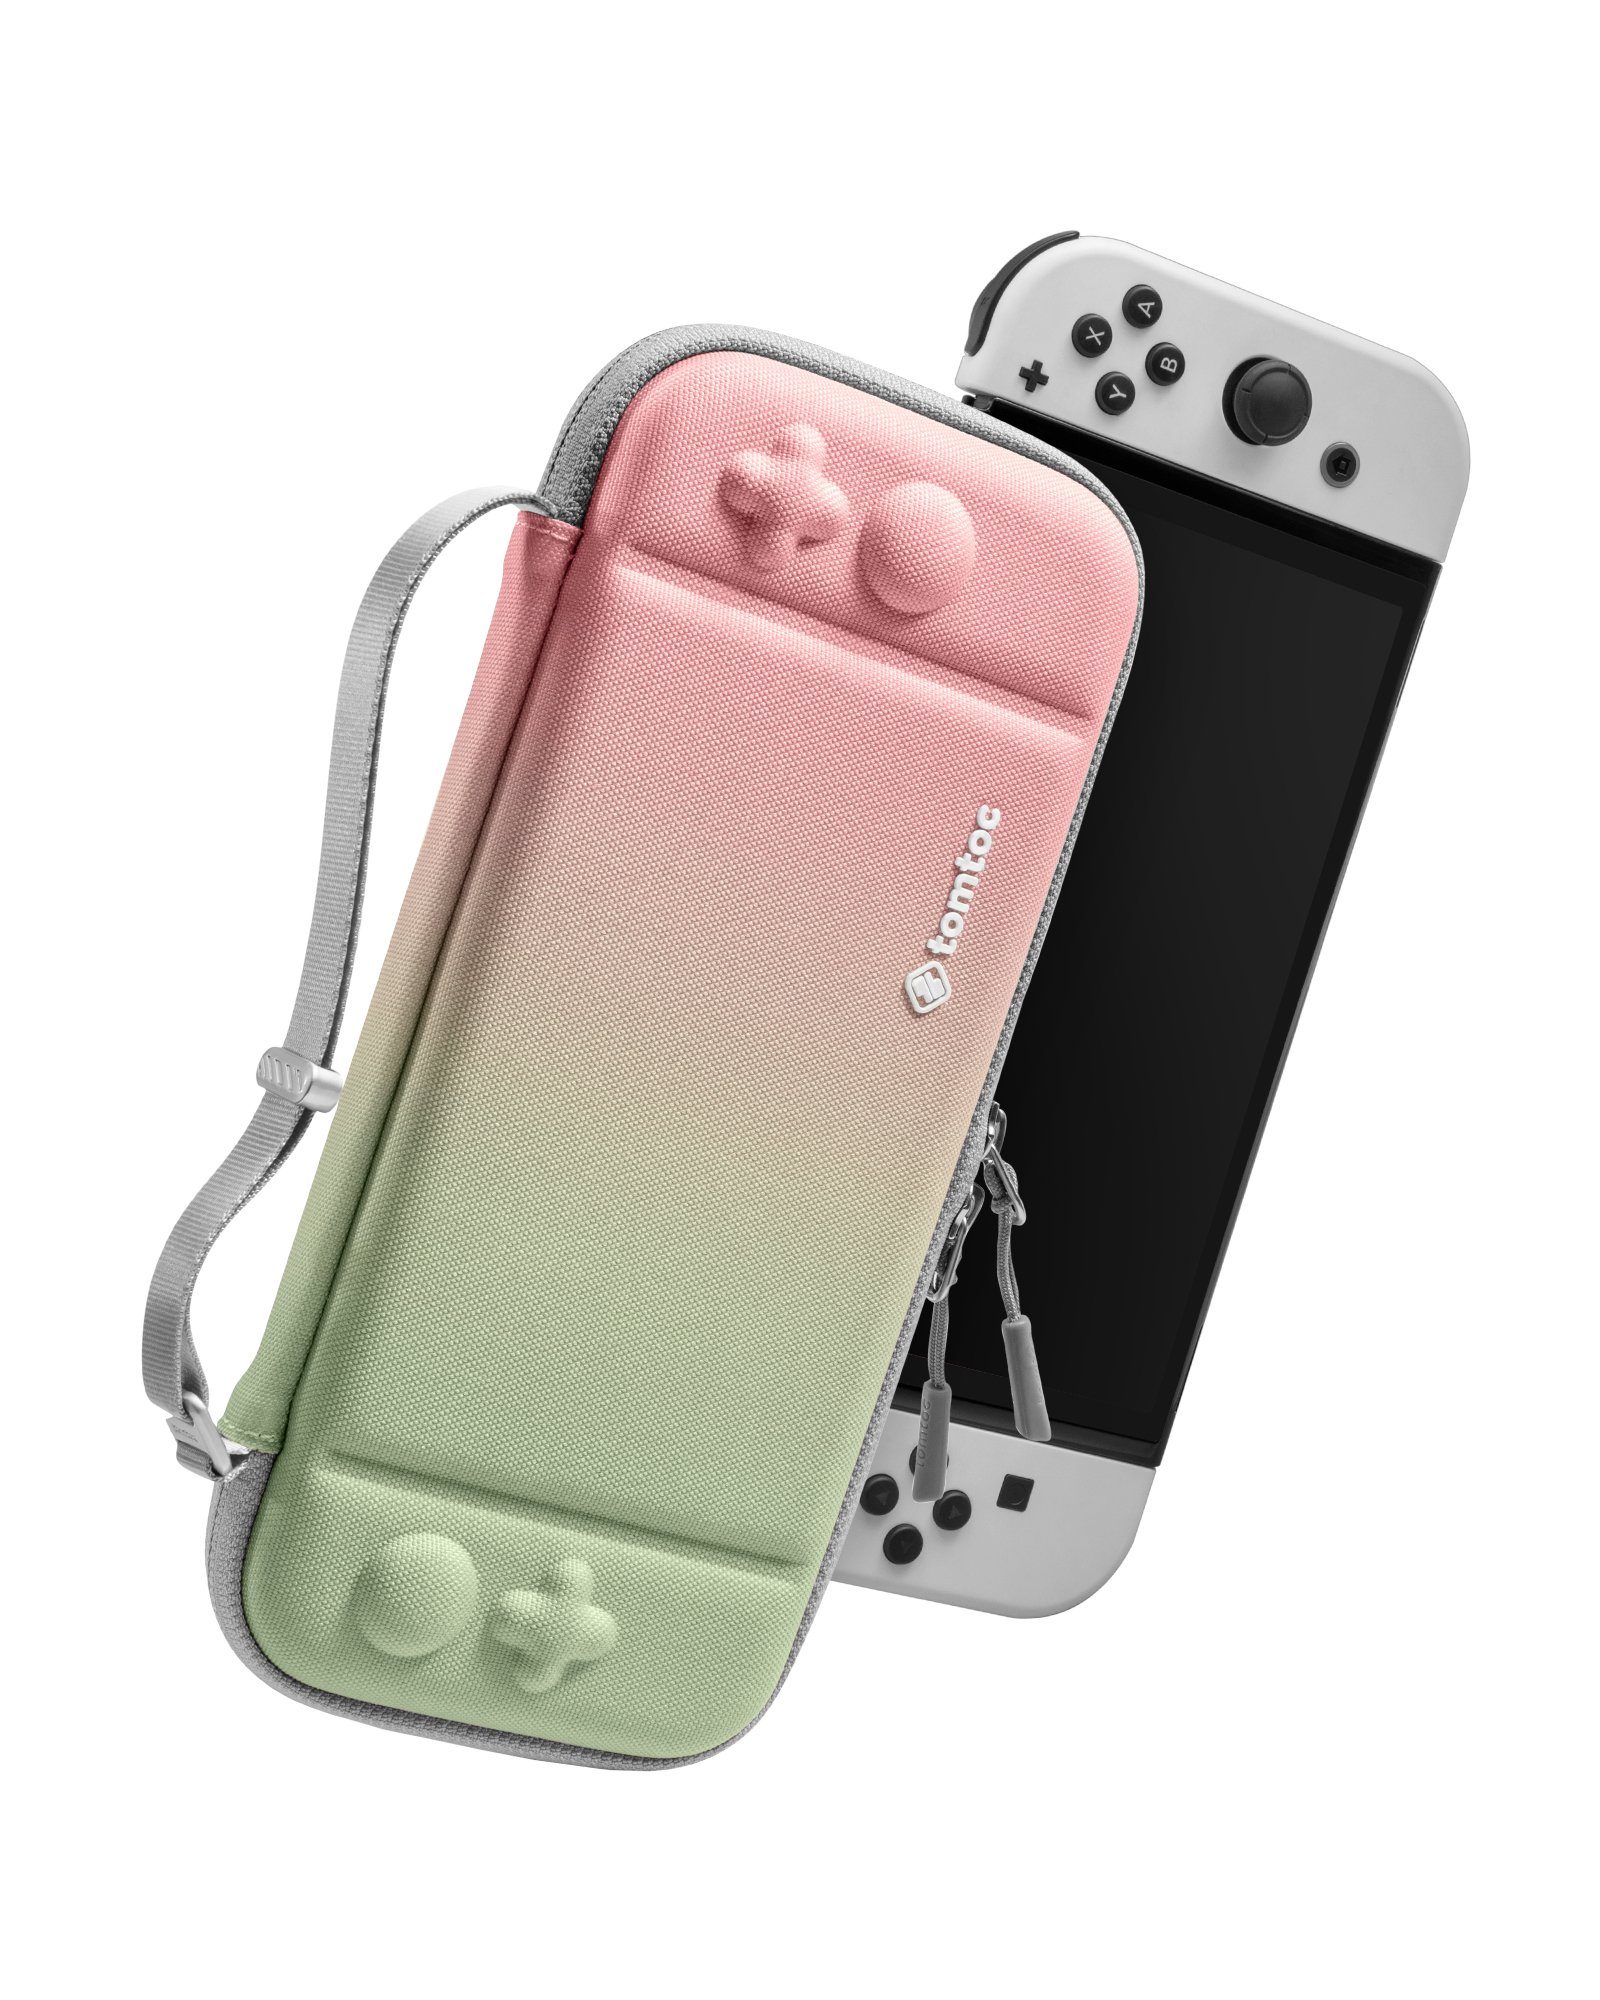 Rundumschutz Nintendo / 10 Spiele Nintendo Kirschblüte tomtoc Tasche, mit OLED Switch Spielekonsolen-Tasche Case Protective OLED Slim Switch